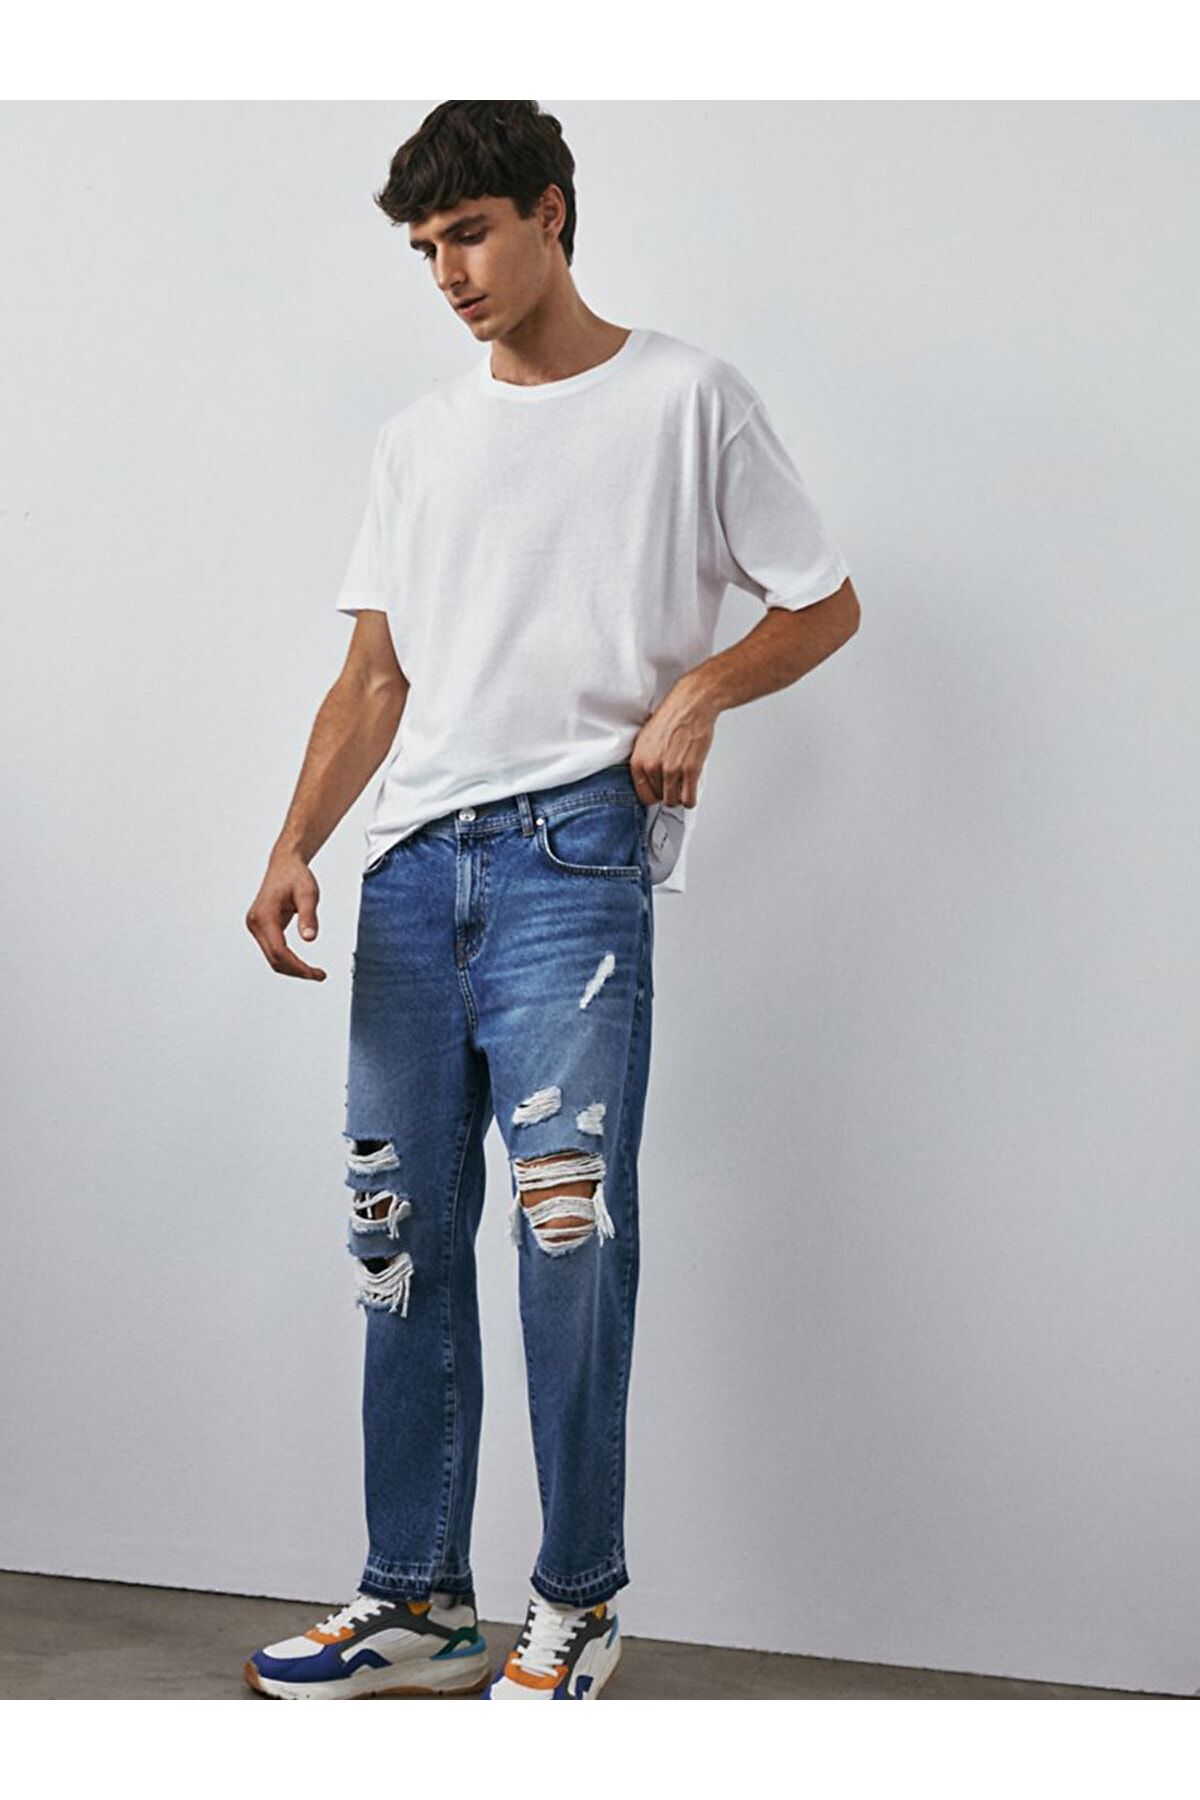 Gevaar tiener kleding stof Ltb Jeans - Blau - Straight - Trendyol